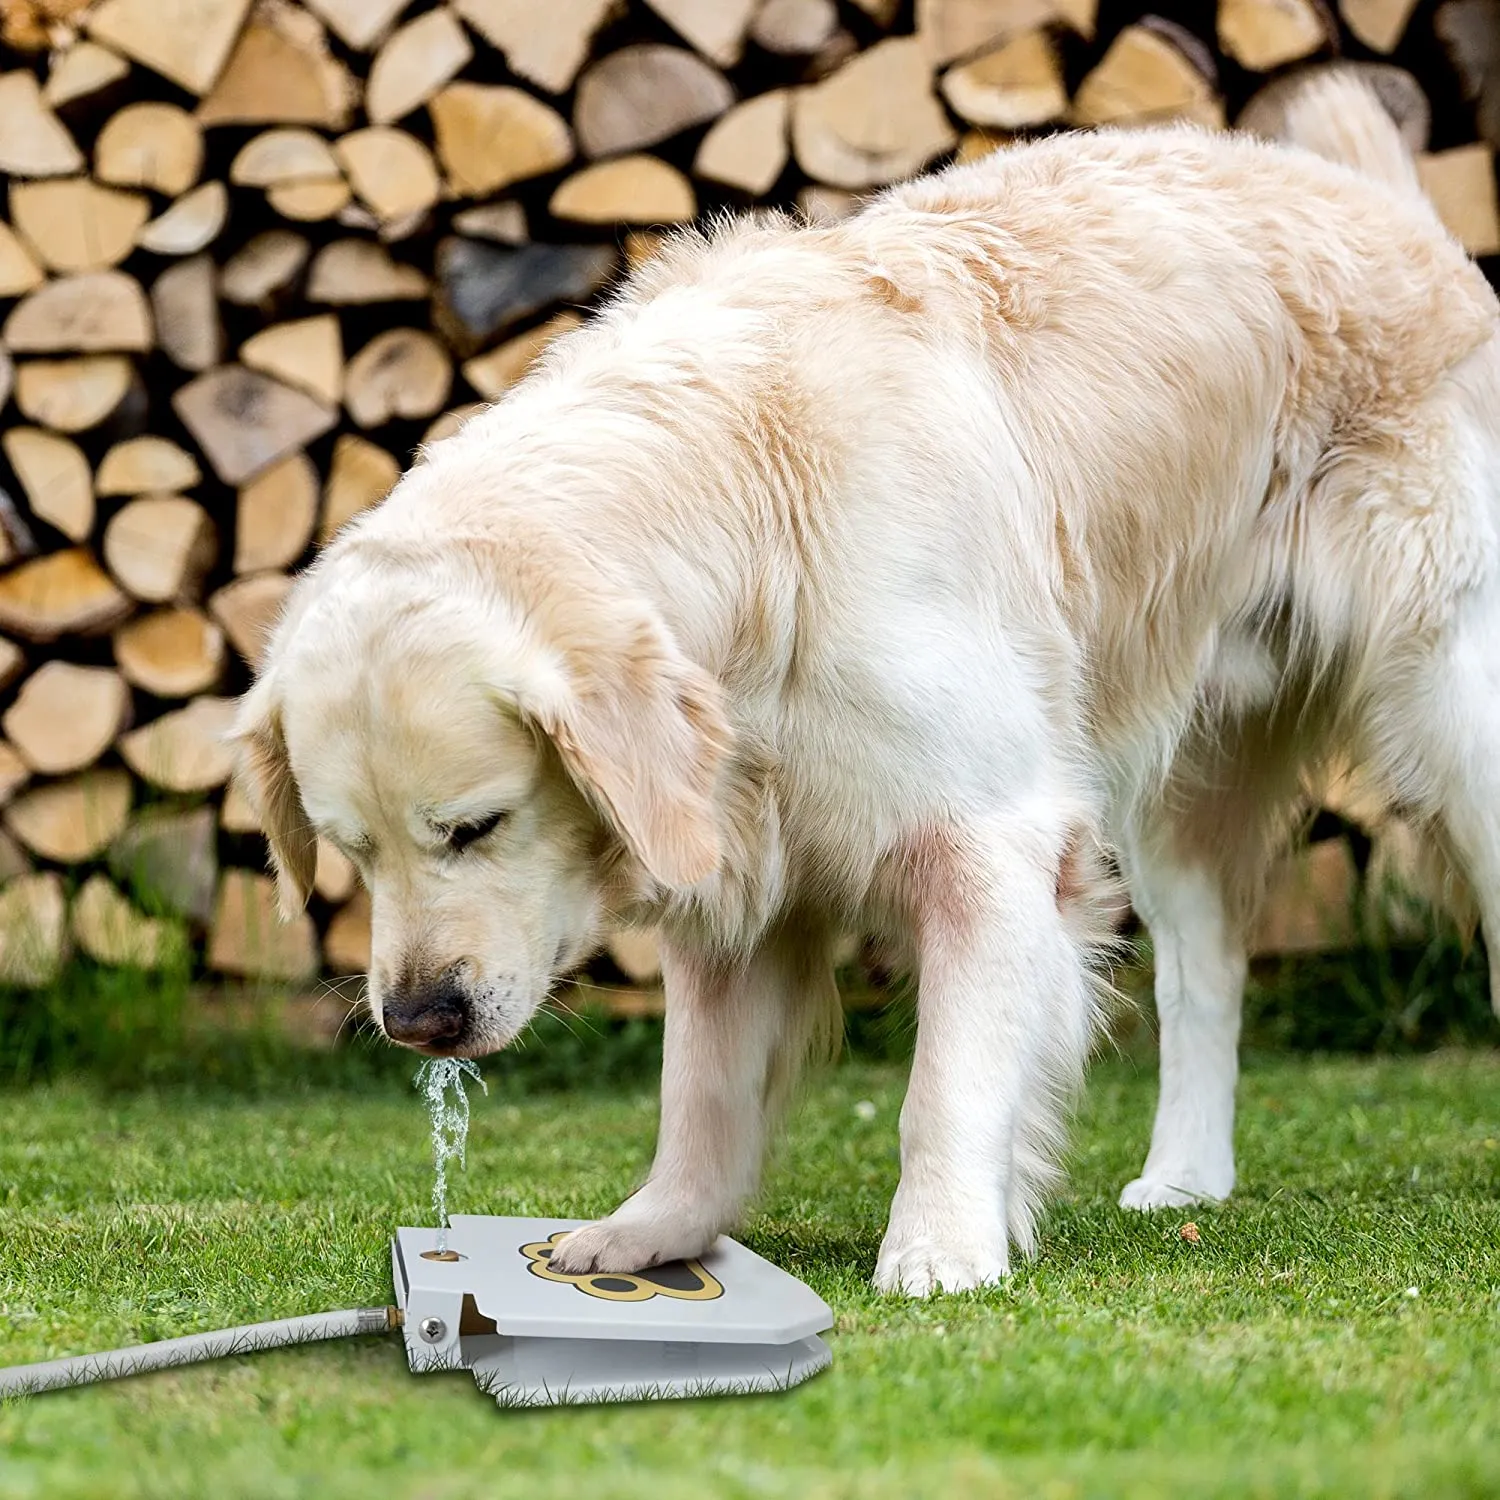 Trinkwasserbrunnen für Hunde im Freien zum Antreten, einfacherer Getränkespender für Haustiere mit Pfotenaktivierung, sorgt für frisches Wasser, robust, einfach zu bedienen